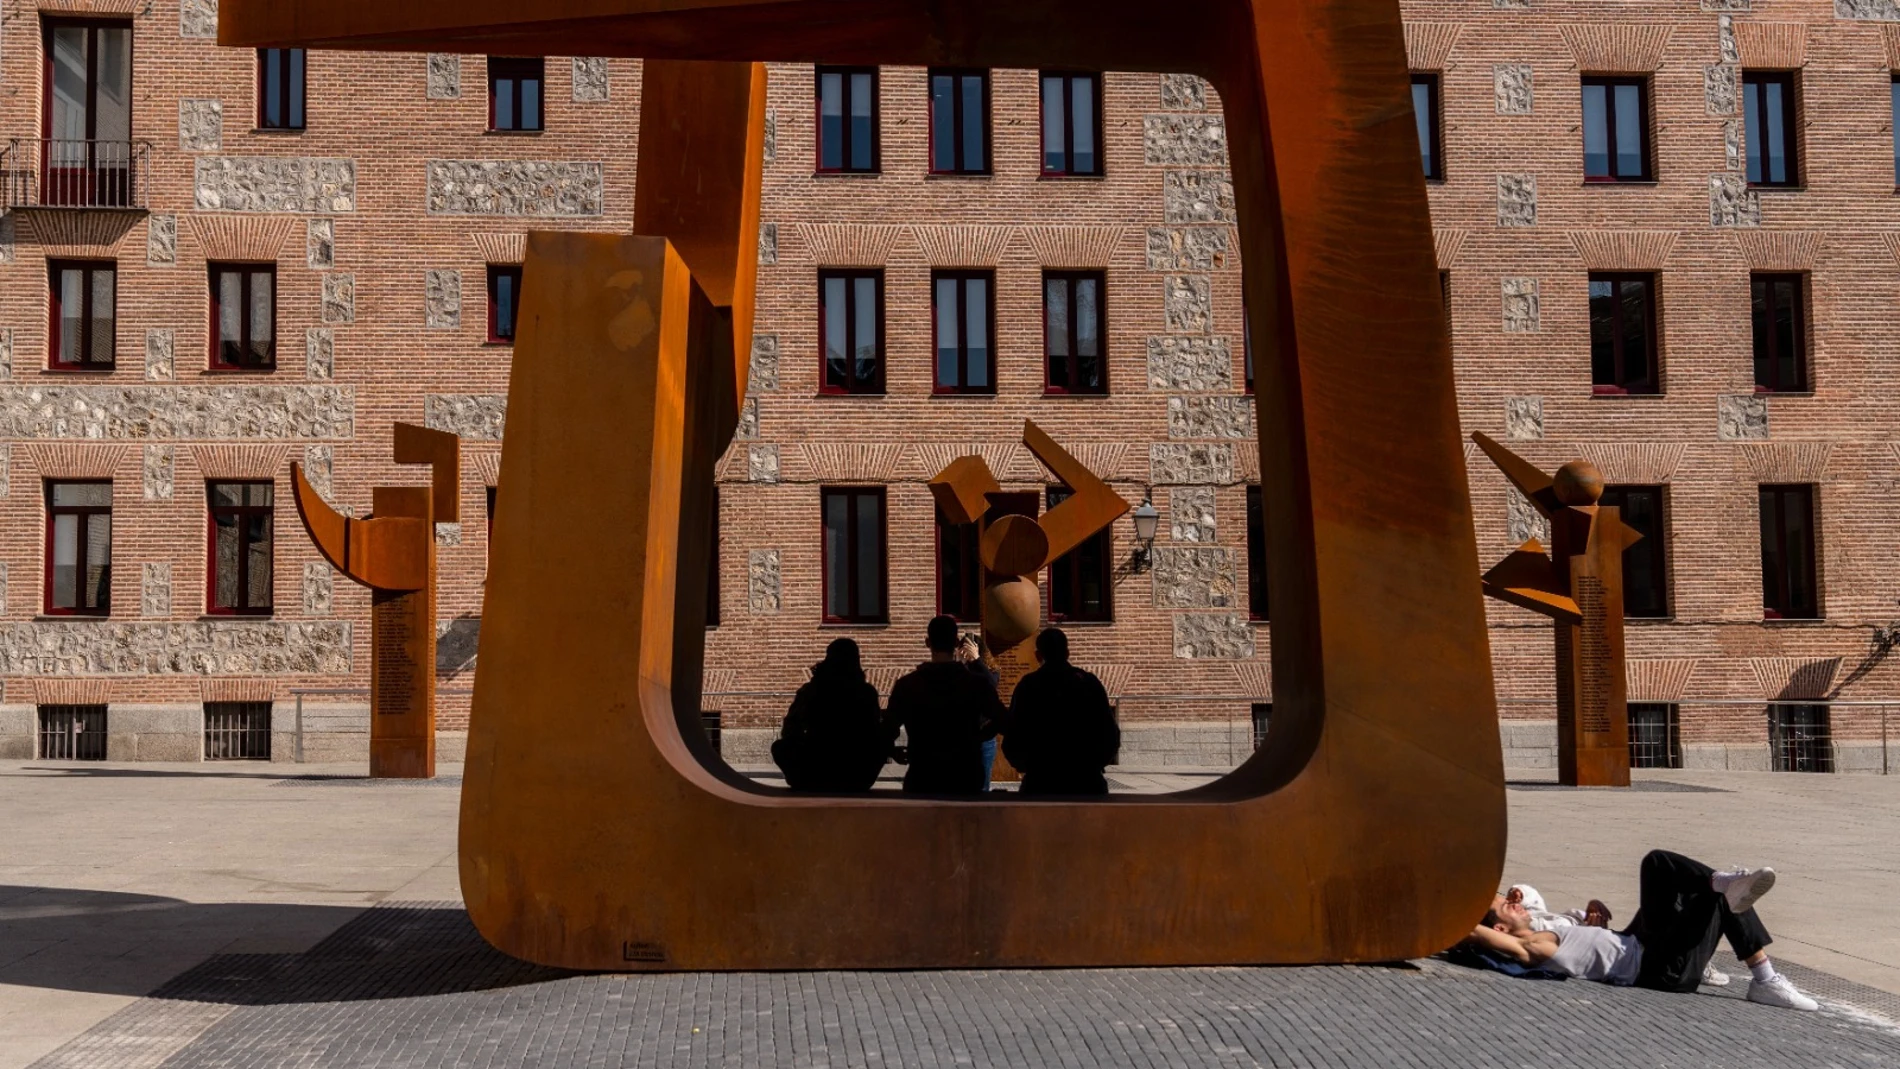 Las esculturas que rinden homenaje a los 449 madrileños deportados a los campos de concentración nazis en la II Guerra Mundial, obra del artista José Miguel Utande en la Plaza del Rollo. 